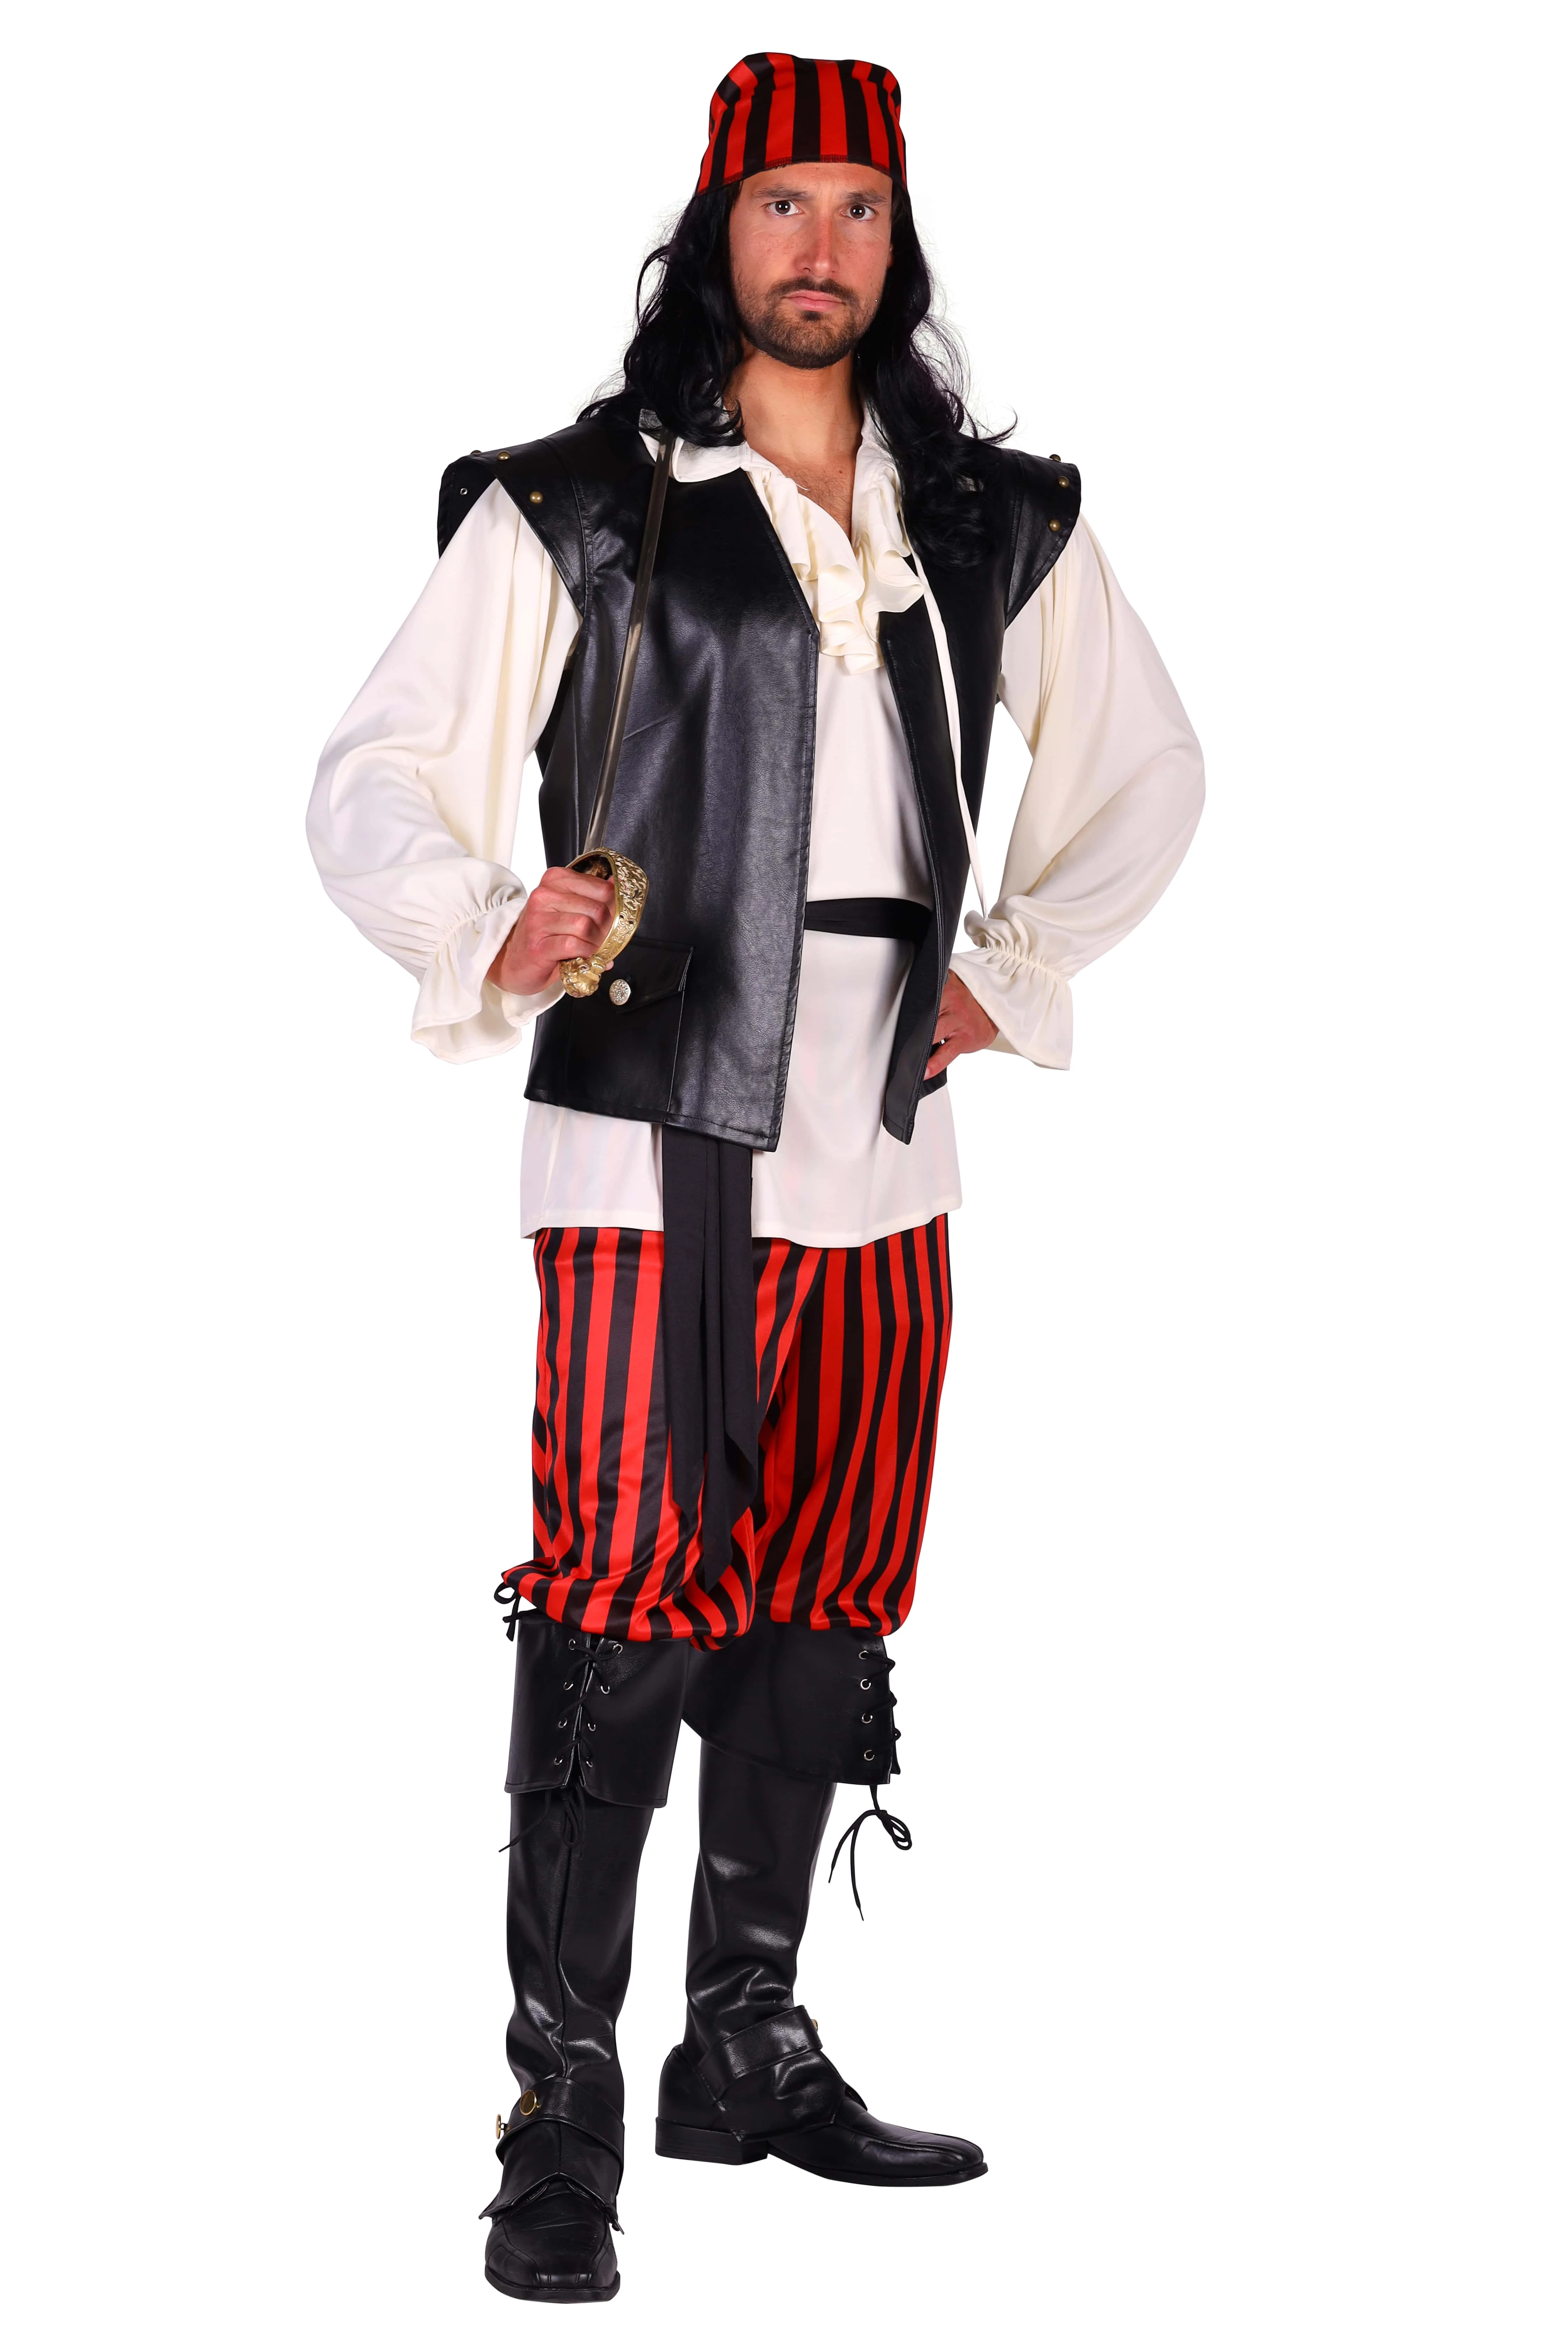 Vestiging Pretentieloos controleren Piraten kostuum rood zwart hoge kwaliteit | Fop en Feestwinkel